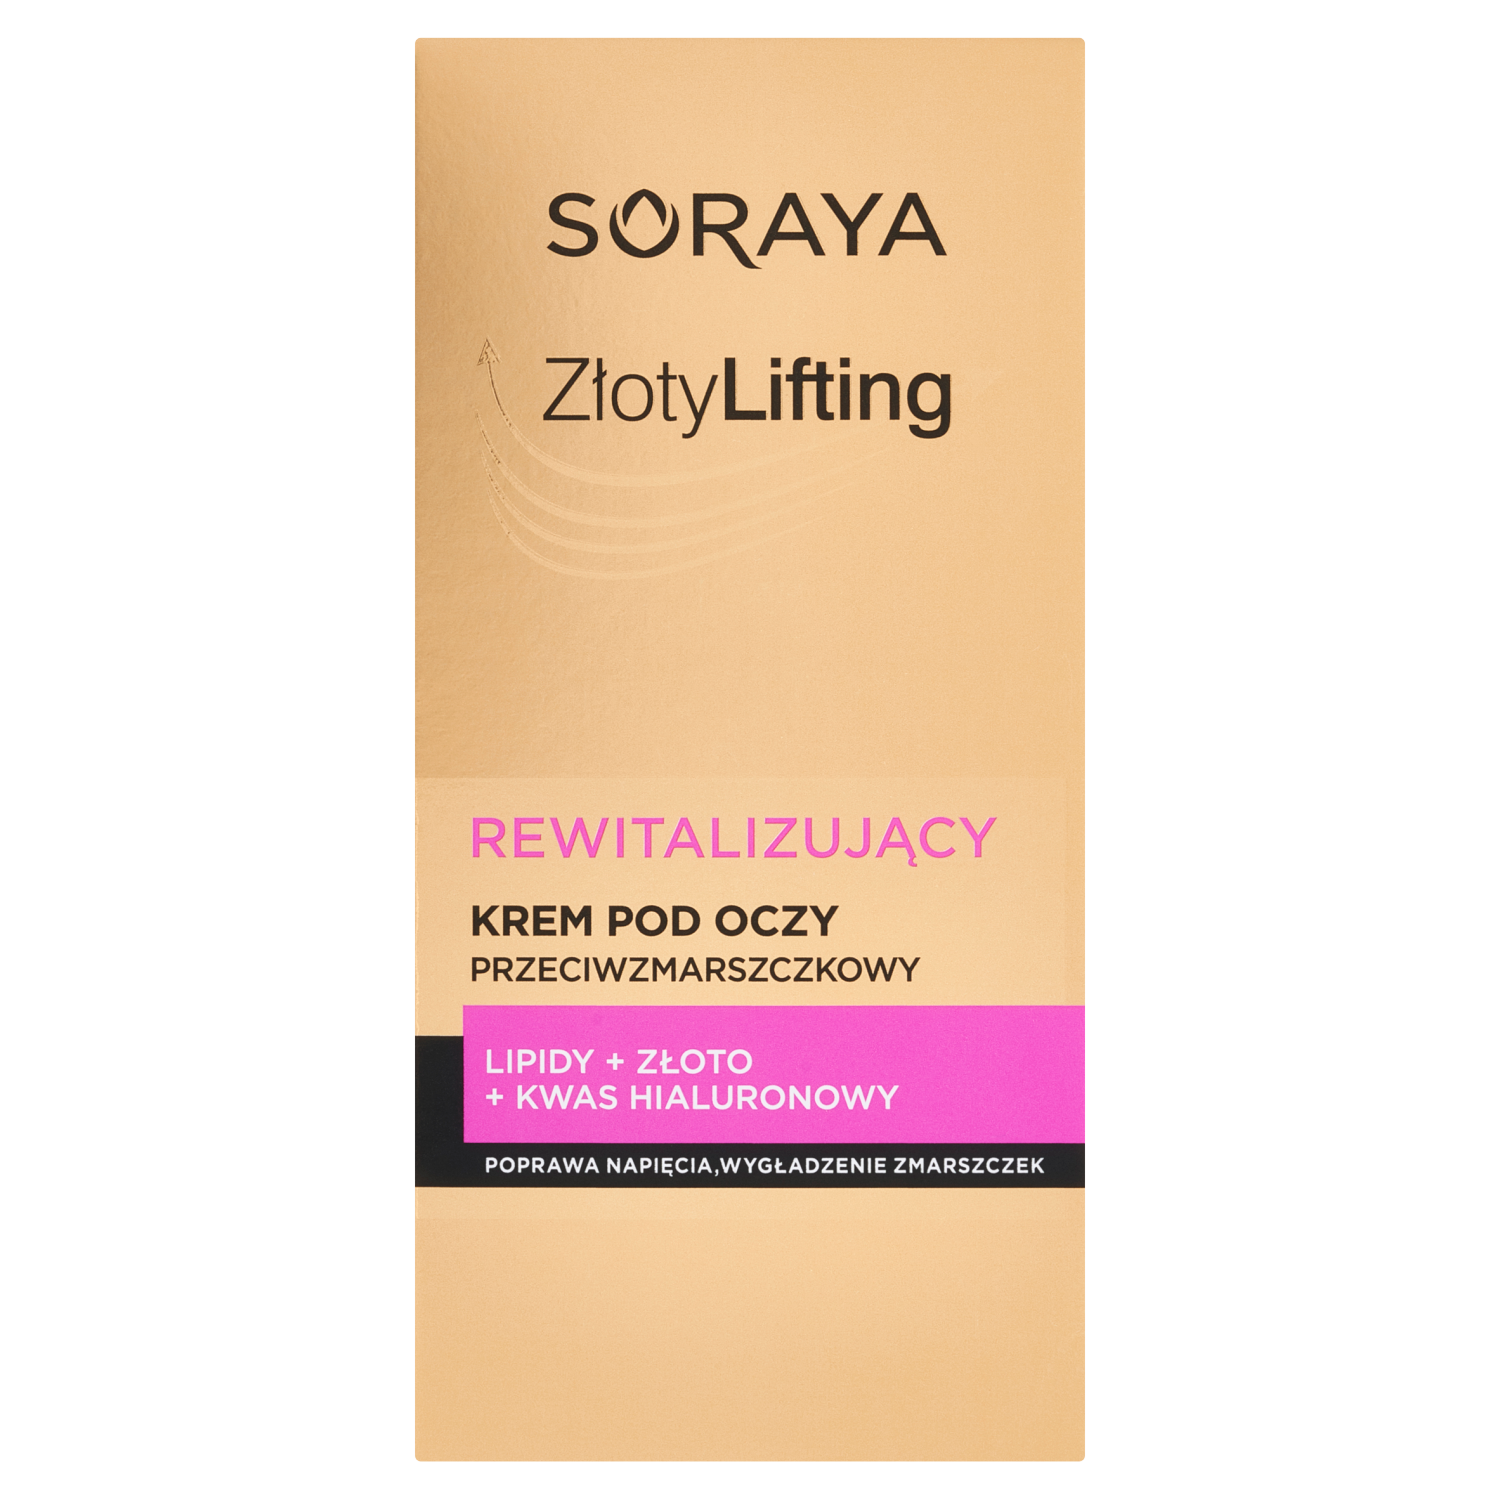 Восстанавливающий крем для глаз против морщин Soraya Złoty Lifting, 15 мл пешкова галина шретер александр растения в домашней косметике и дерматологии